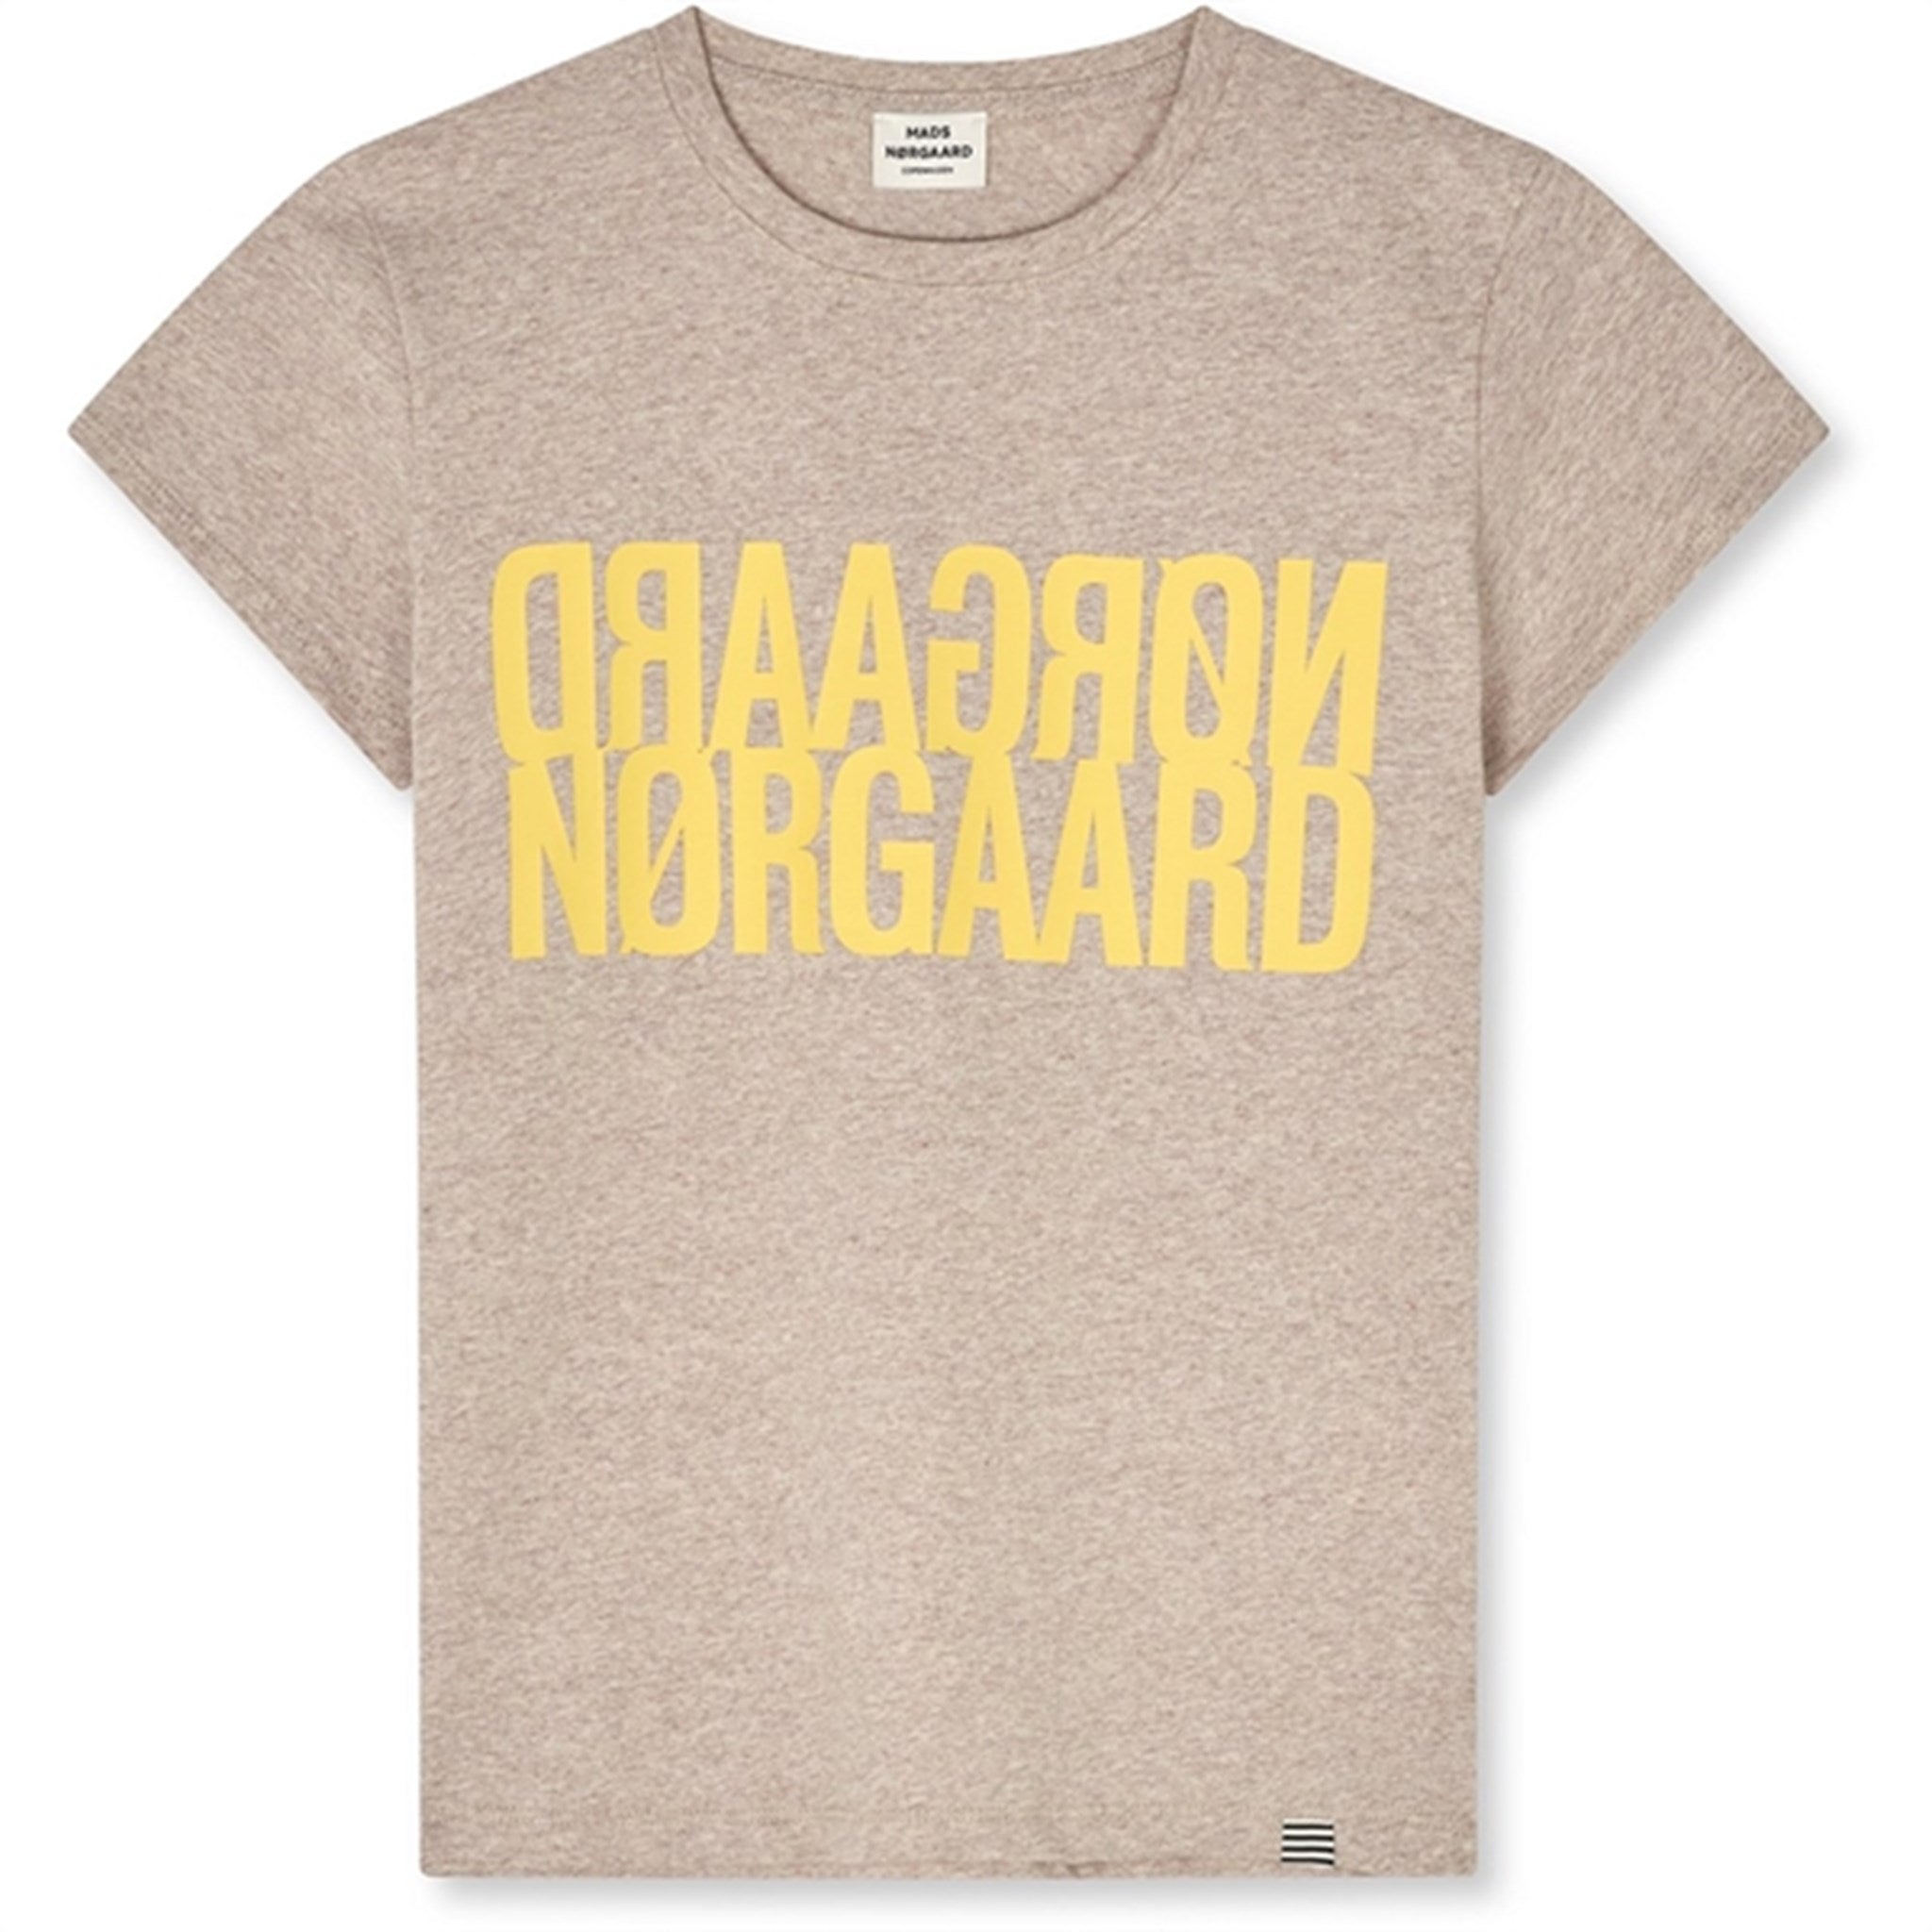 Mads Nørgaard Single Organic Tuvina T-Shirt Oatmeal Melange - Str. 16 år